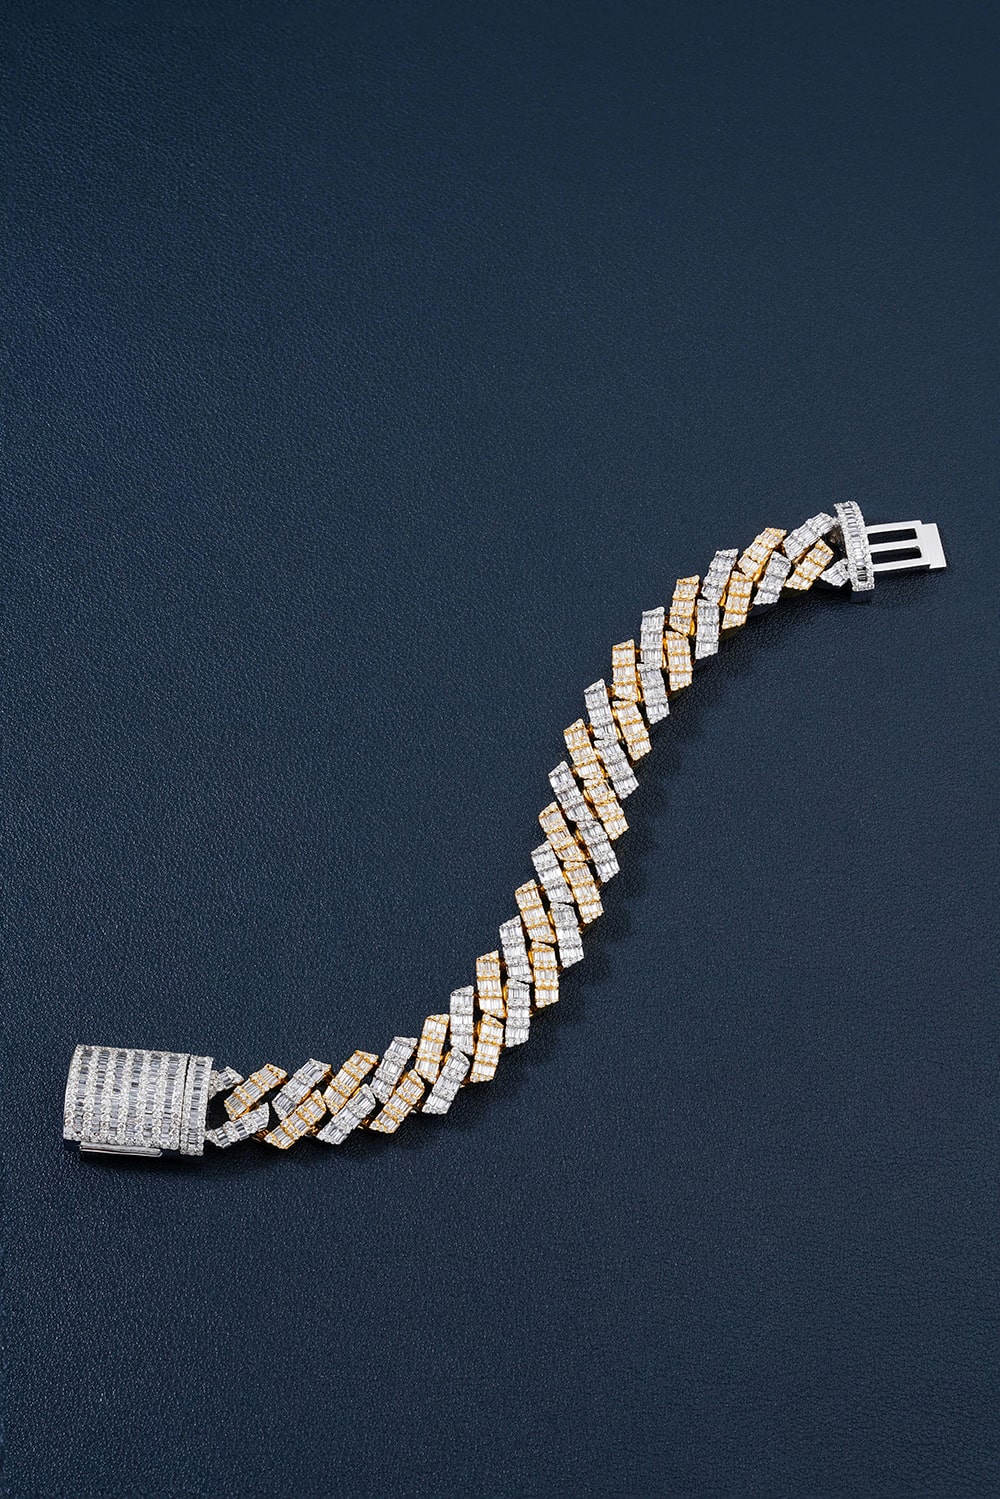 jewelsqueen diamond cuban link bracelets